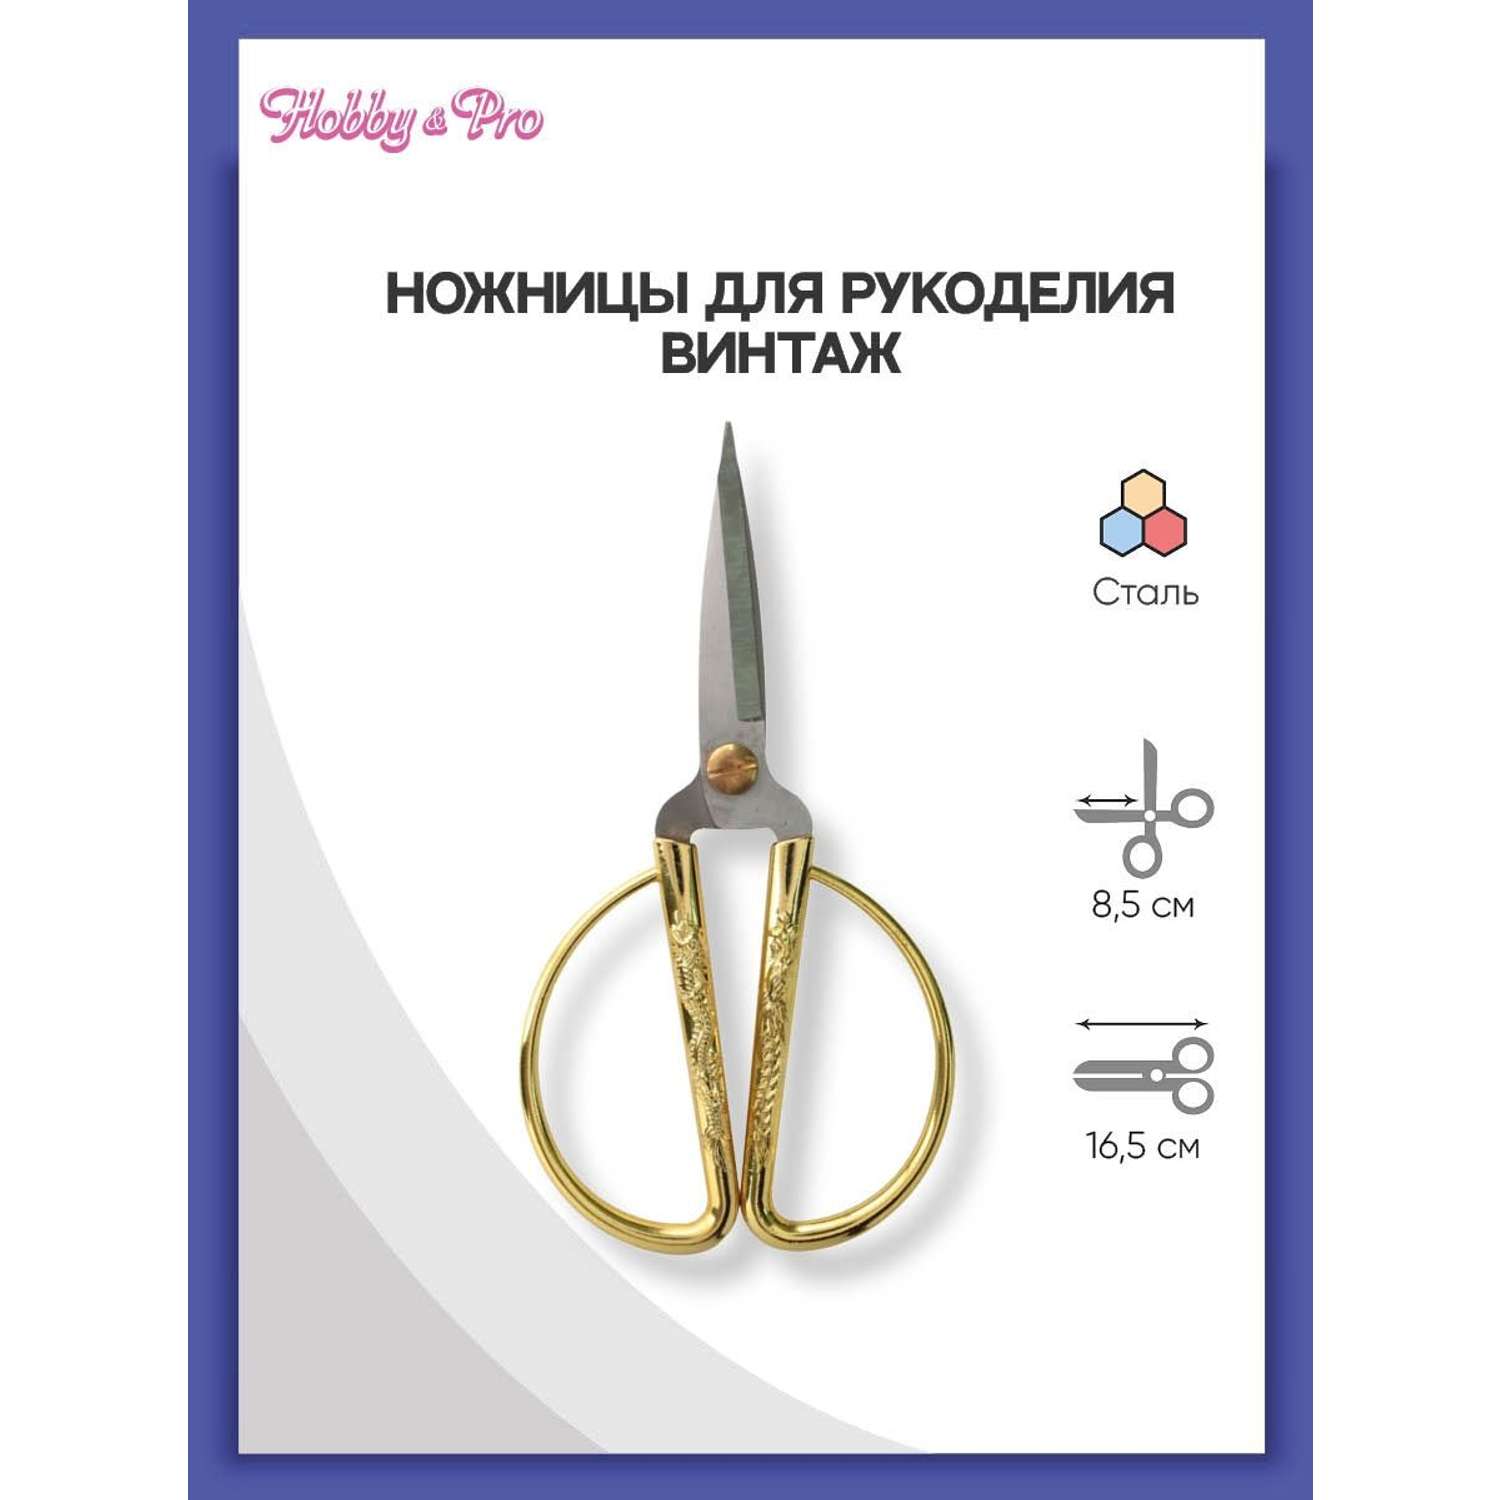 Ножницы для рукоделия Hobby Pro Винтаж золото - фото 1